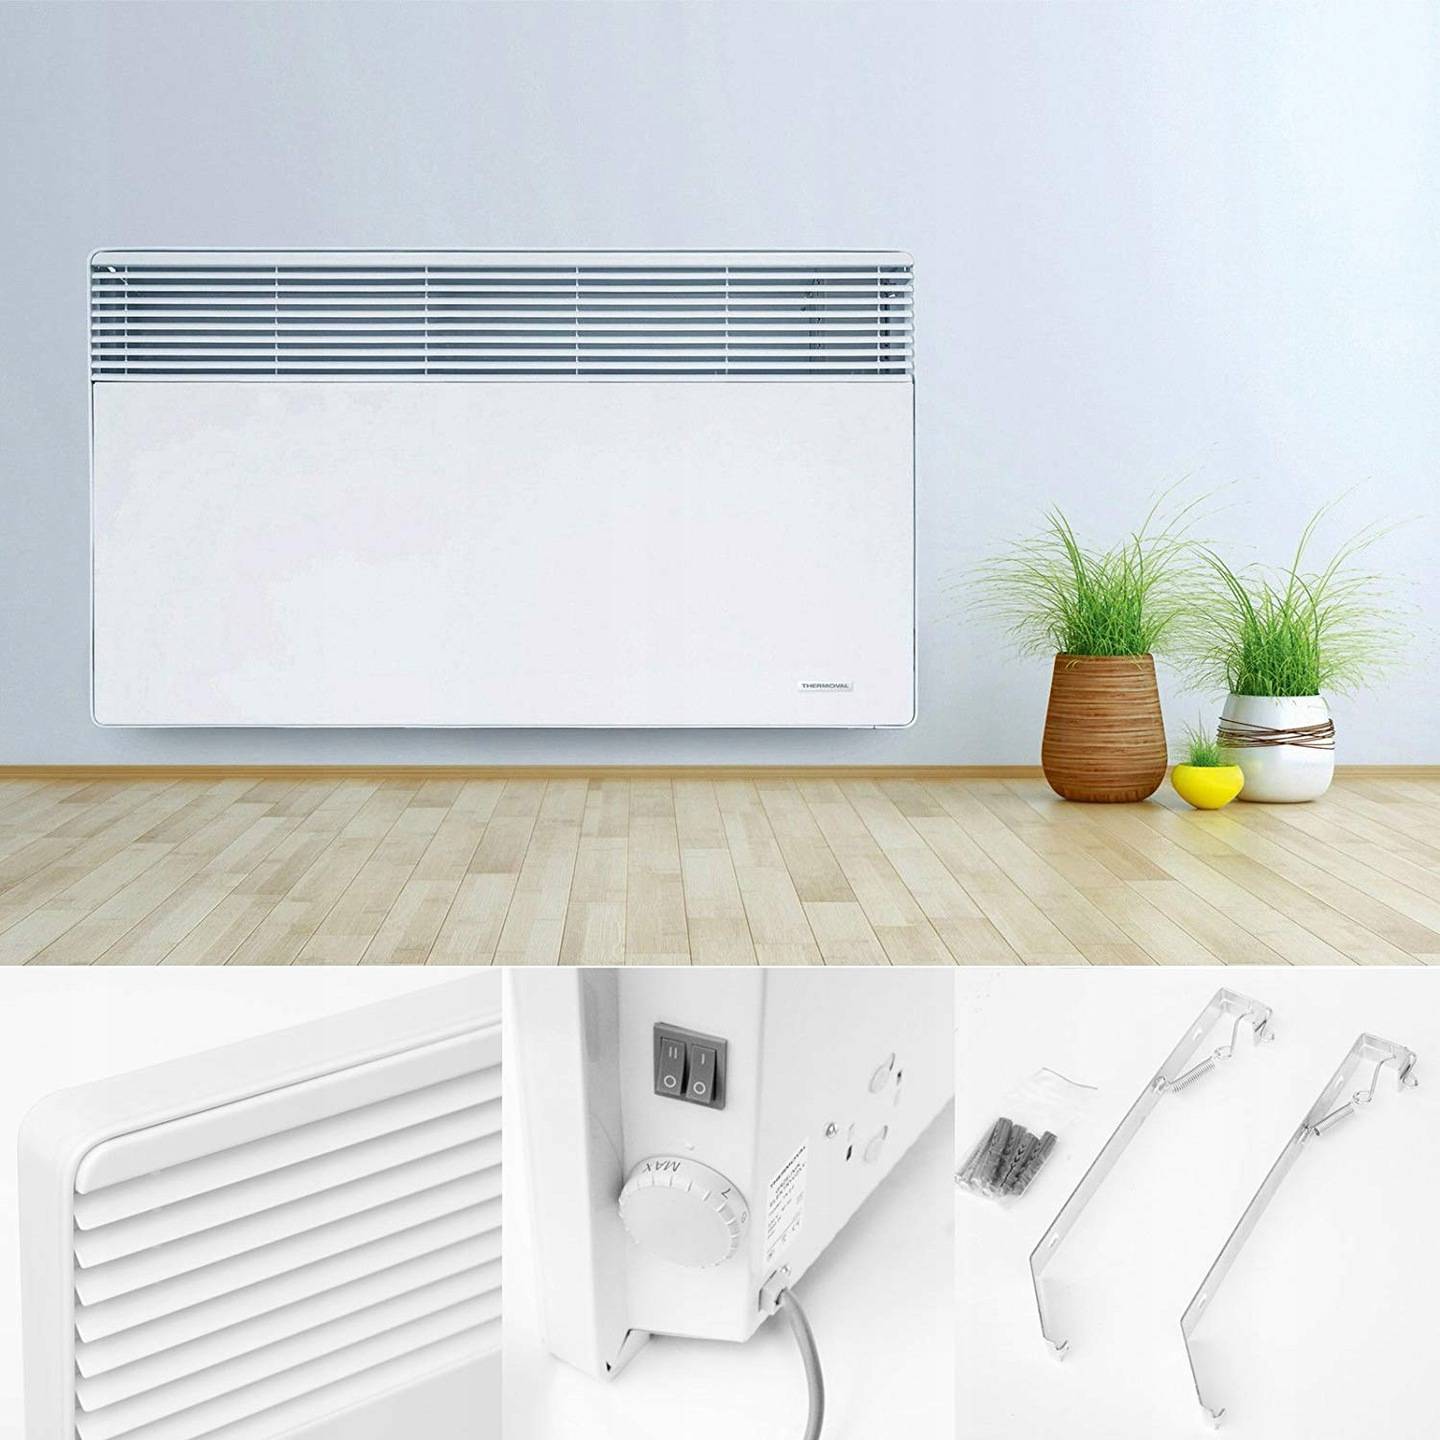 Теплый пол vs радиаторы - 7 : 7 - что же лучше для отопления дома?